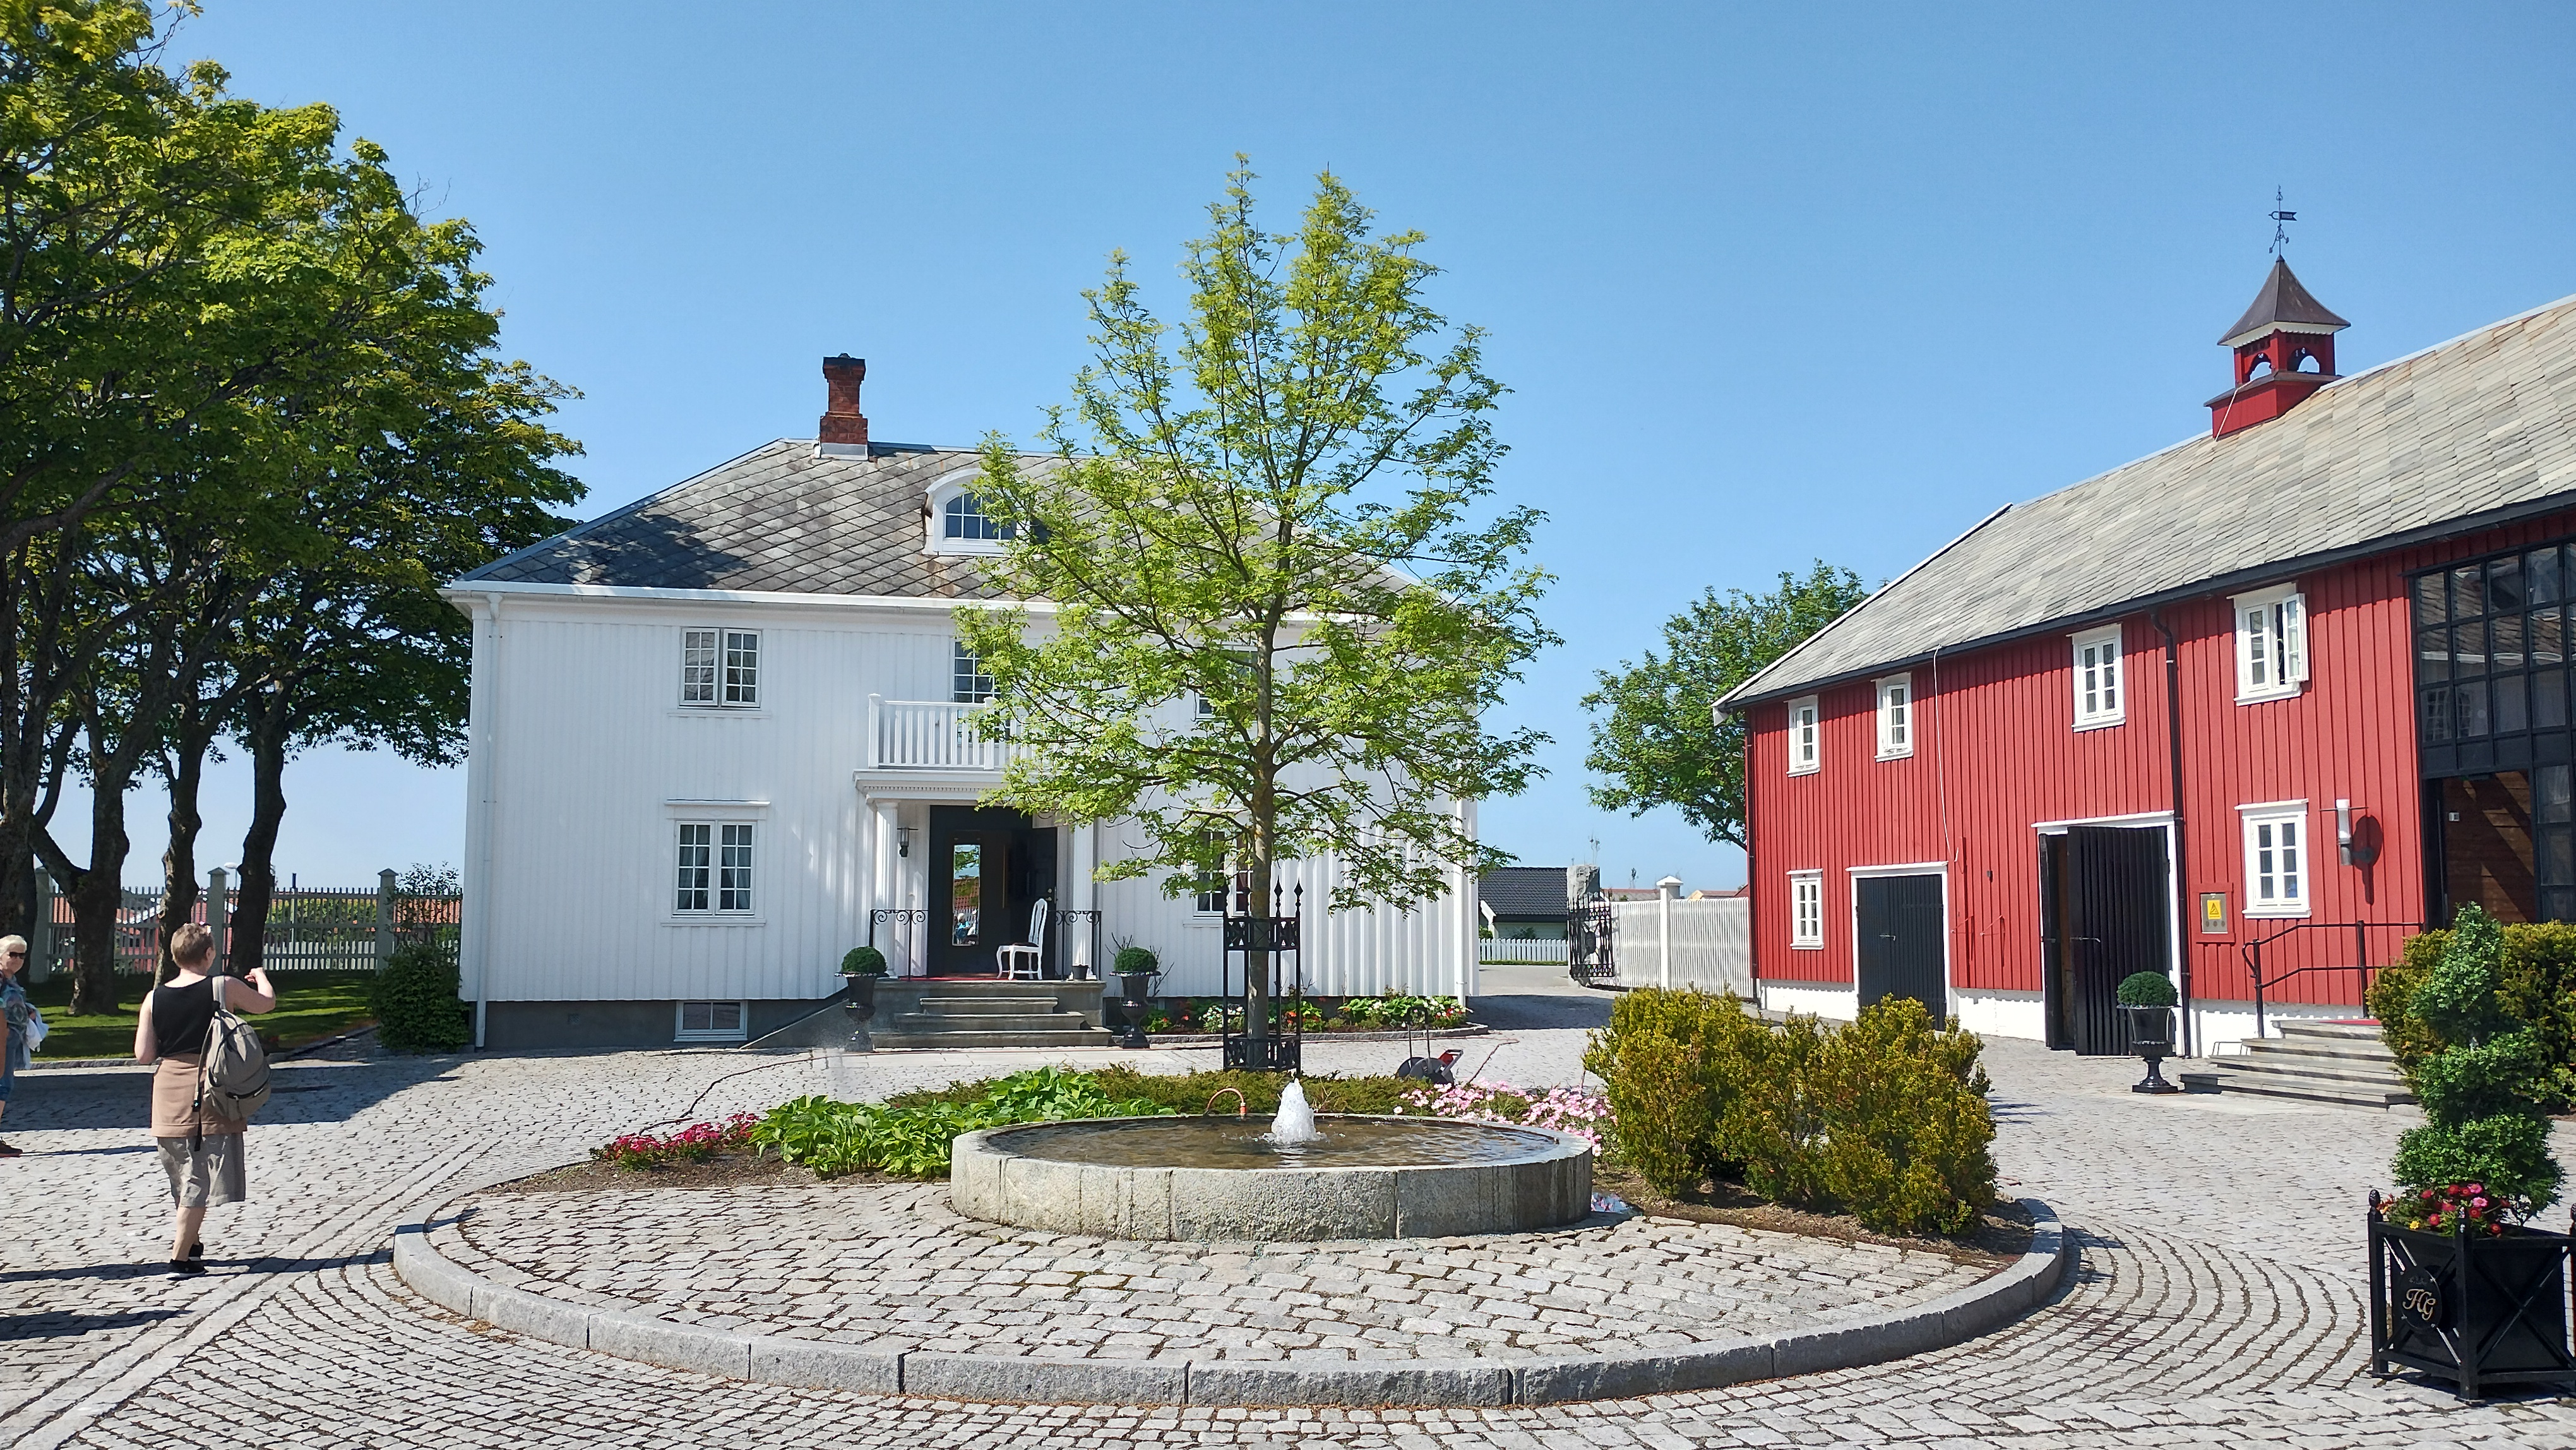 et rødt og hvitt hus med en fontene på gårdsplassen.